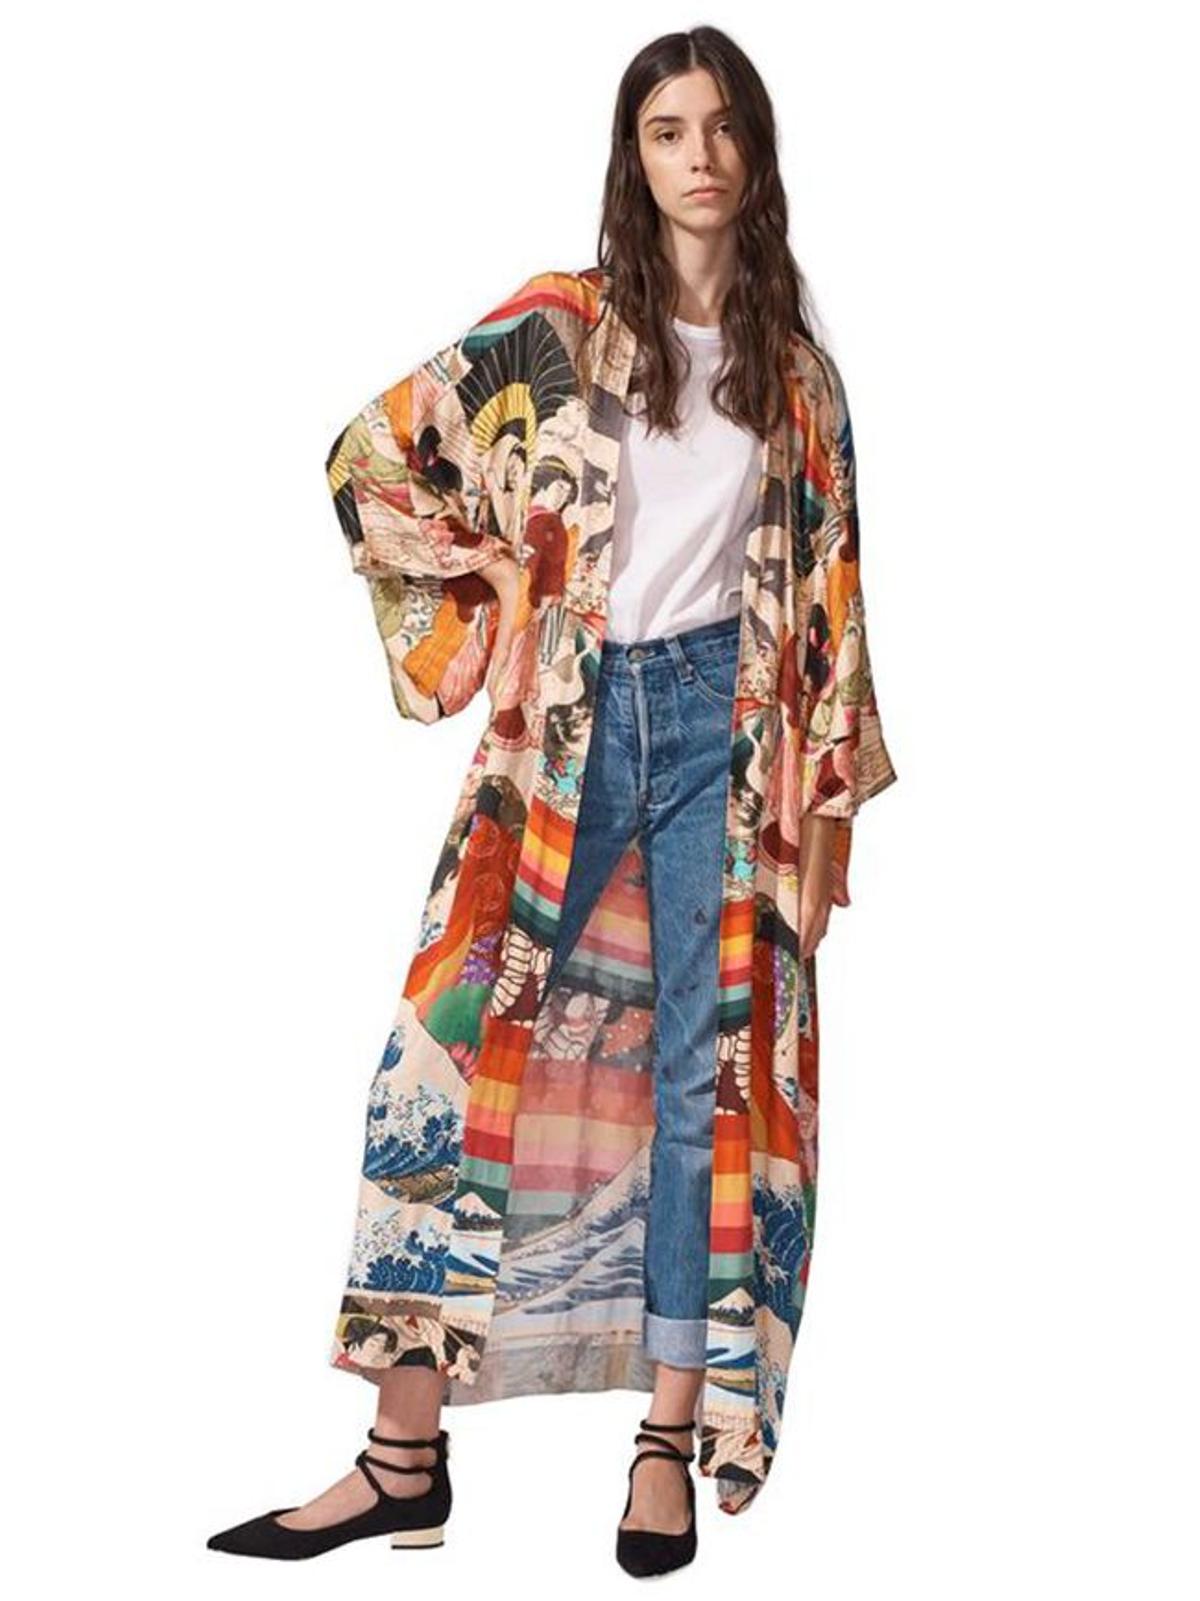 Úrsula Corberó y el kimono que te enamorará - Woman